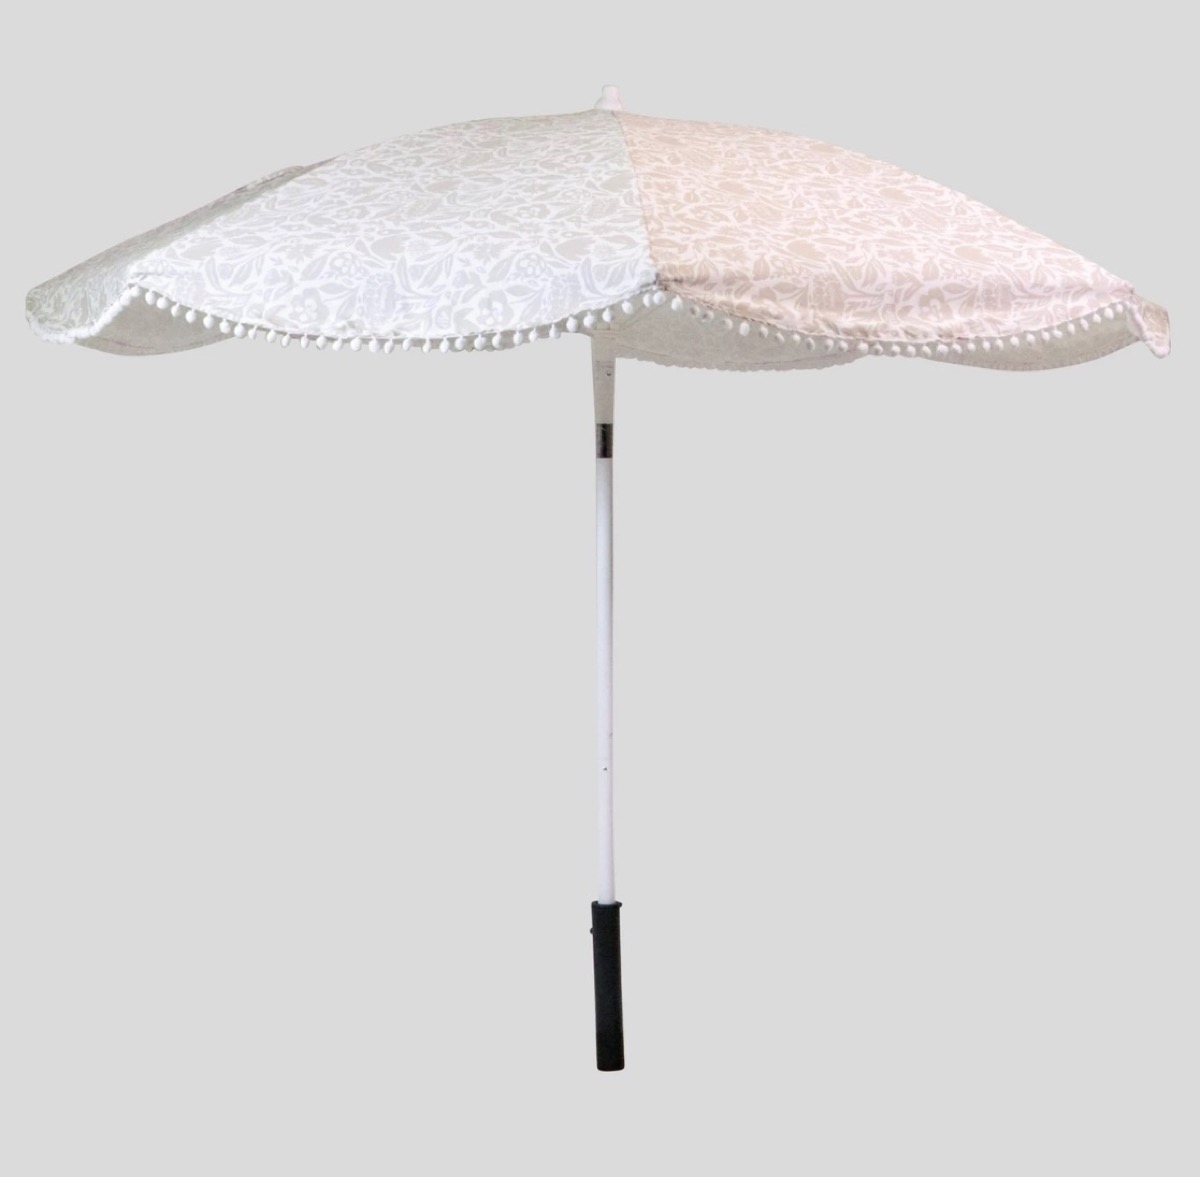 Scalloped Outdoor Umbrella Target Shopping